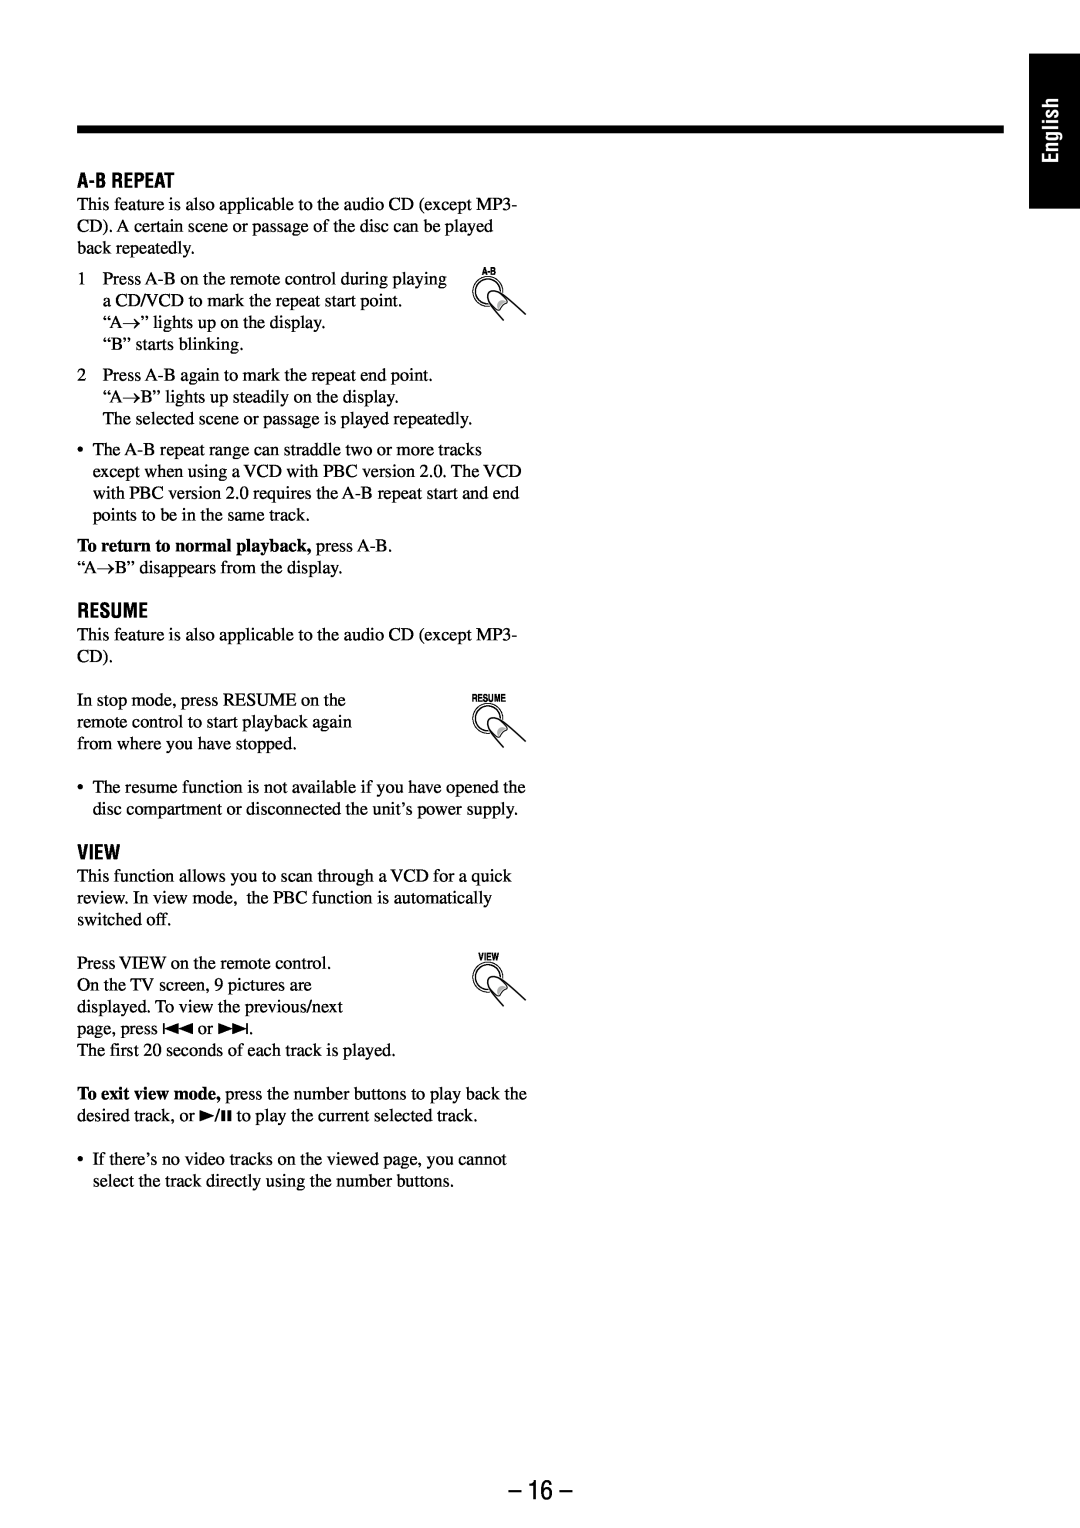 JVC UX-M6VUB manual English, A-Brepeat, Resume, View 